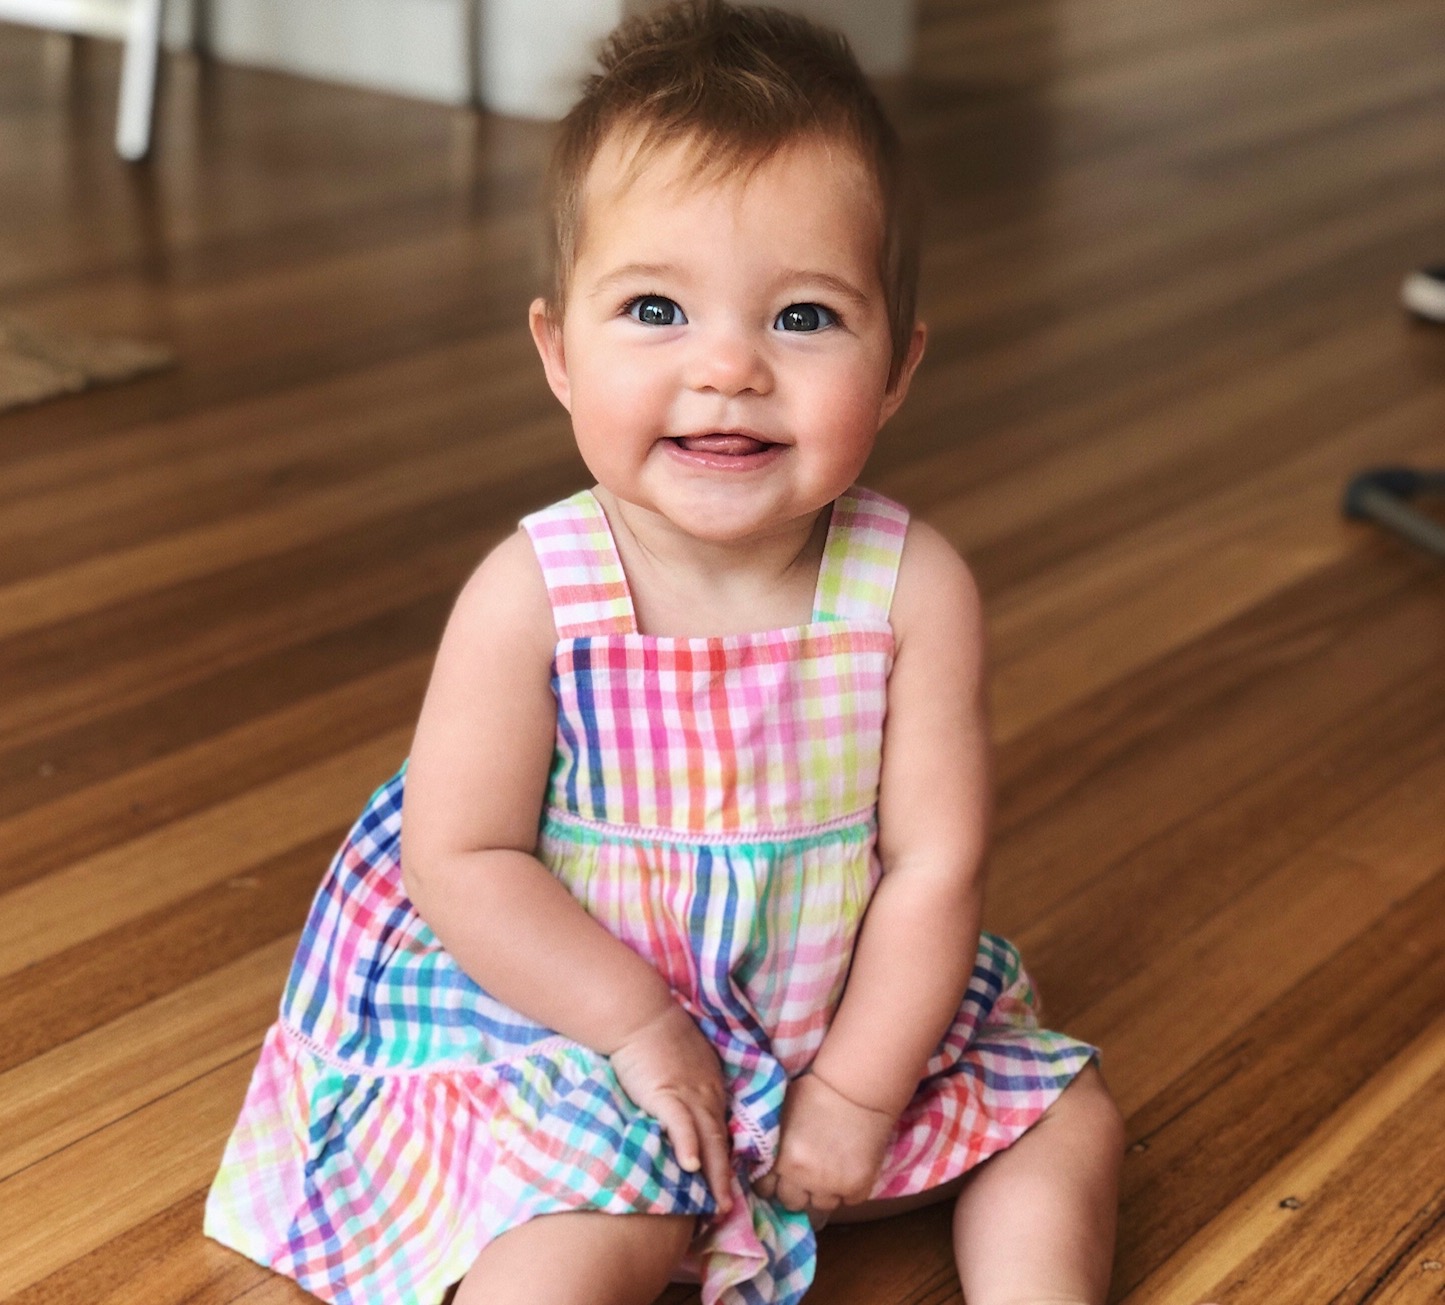 toddler girl in dress on floor smiling